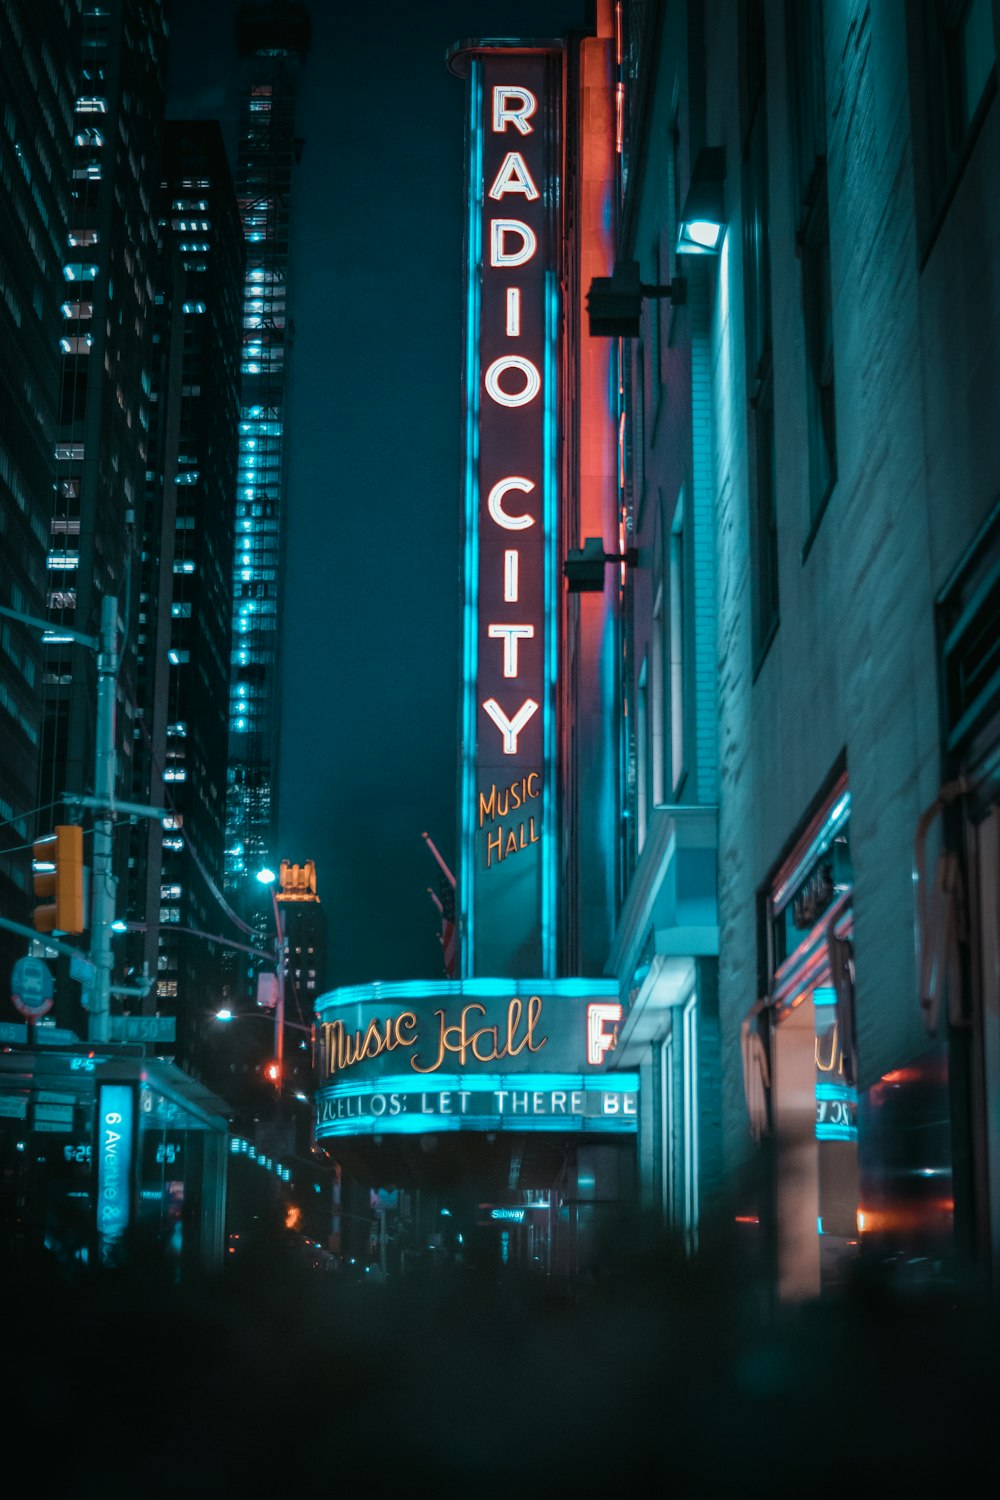 Radio city signage during nighttime photo – Free Street photography Image  on Unsplash